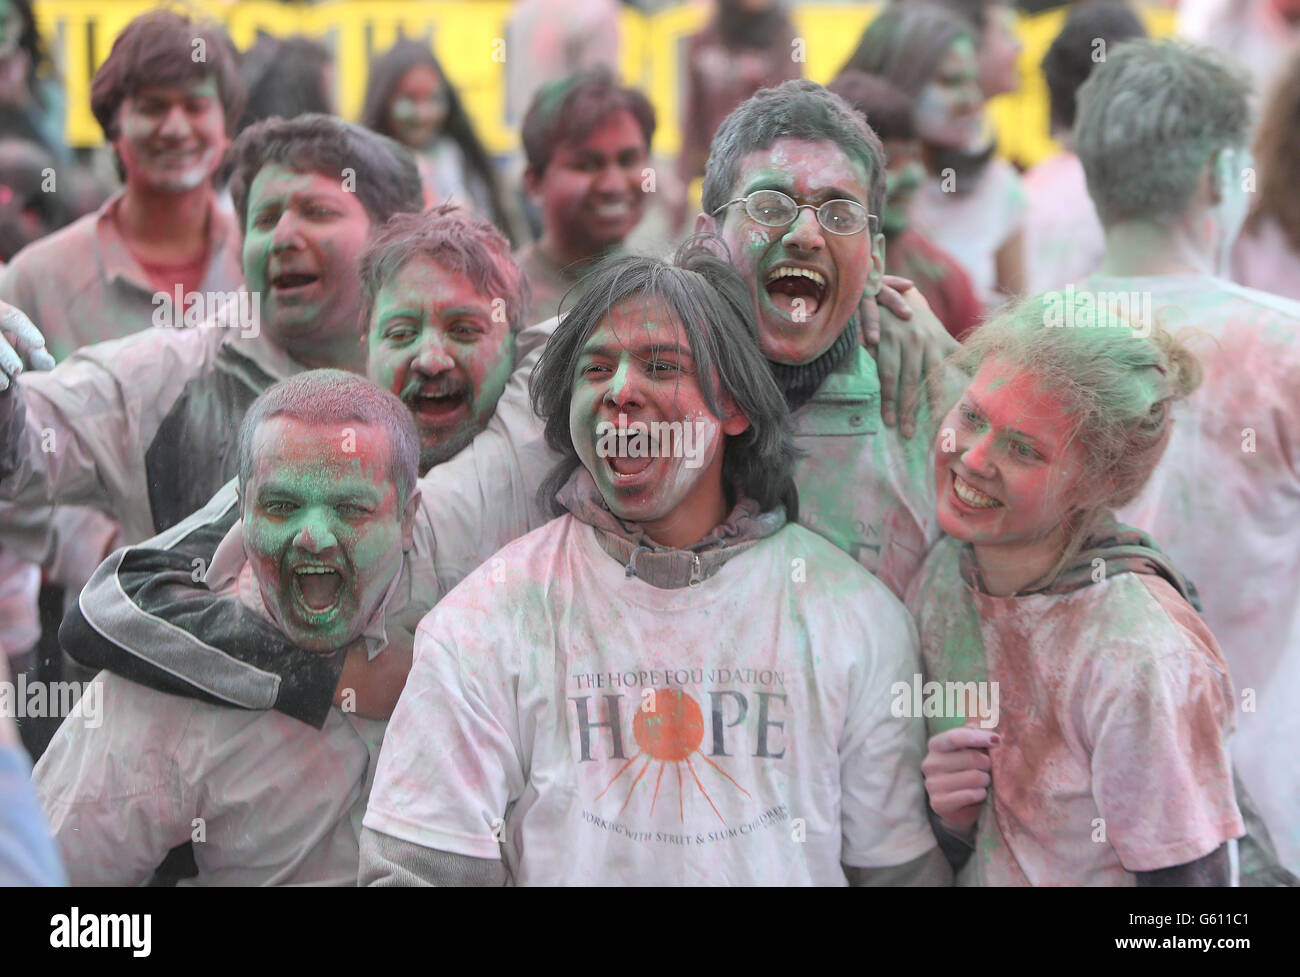 Hunderte von Trinity-Studenten feiern Holi, das Indian Festival of Colors, heute auf dem College Front Square in Dublin, Irland. DRÜCKEN Sie VERBANDSFOTO. Bilddatum: Mittwoch, 27. März 2013. DRÜCKEN Sie VERBANDSFOTO. Bilddatum: Mittwoch, 27. März 2013.Bildnachweis sollte lauten: Niall Carson/PA Wire Stockfoto